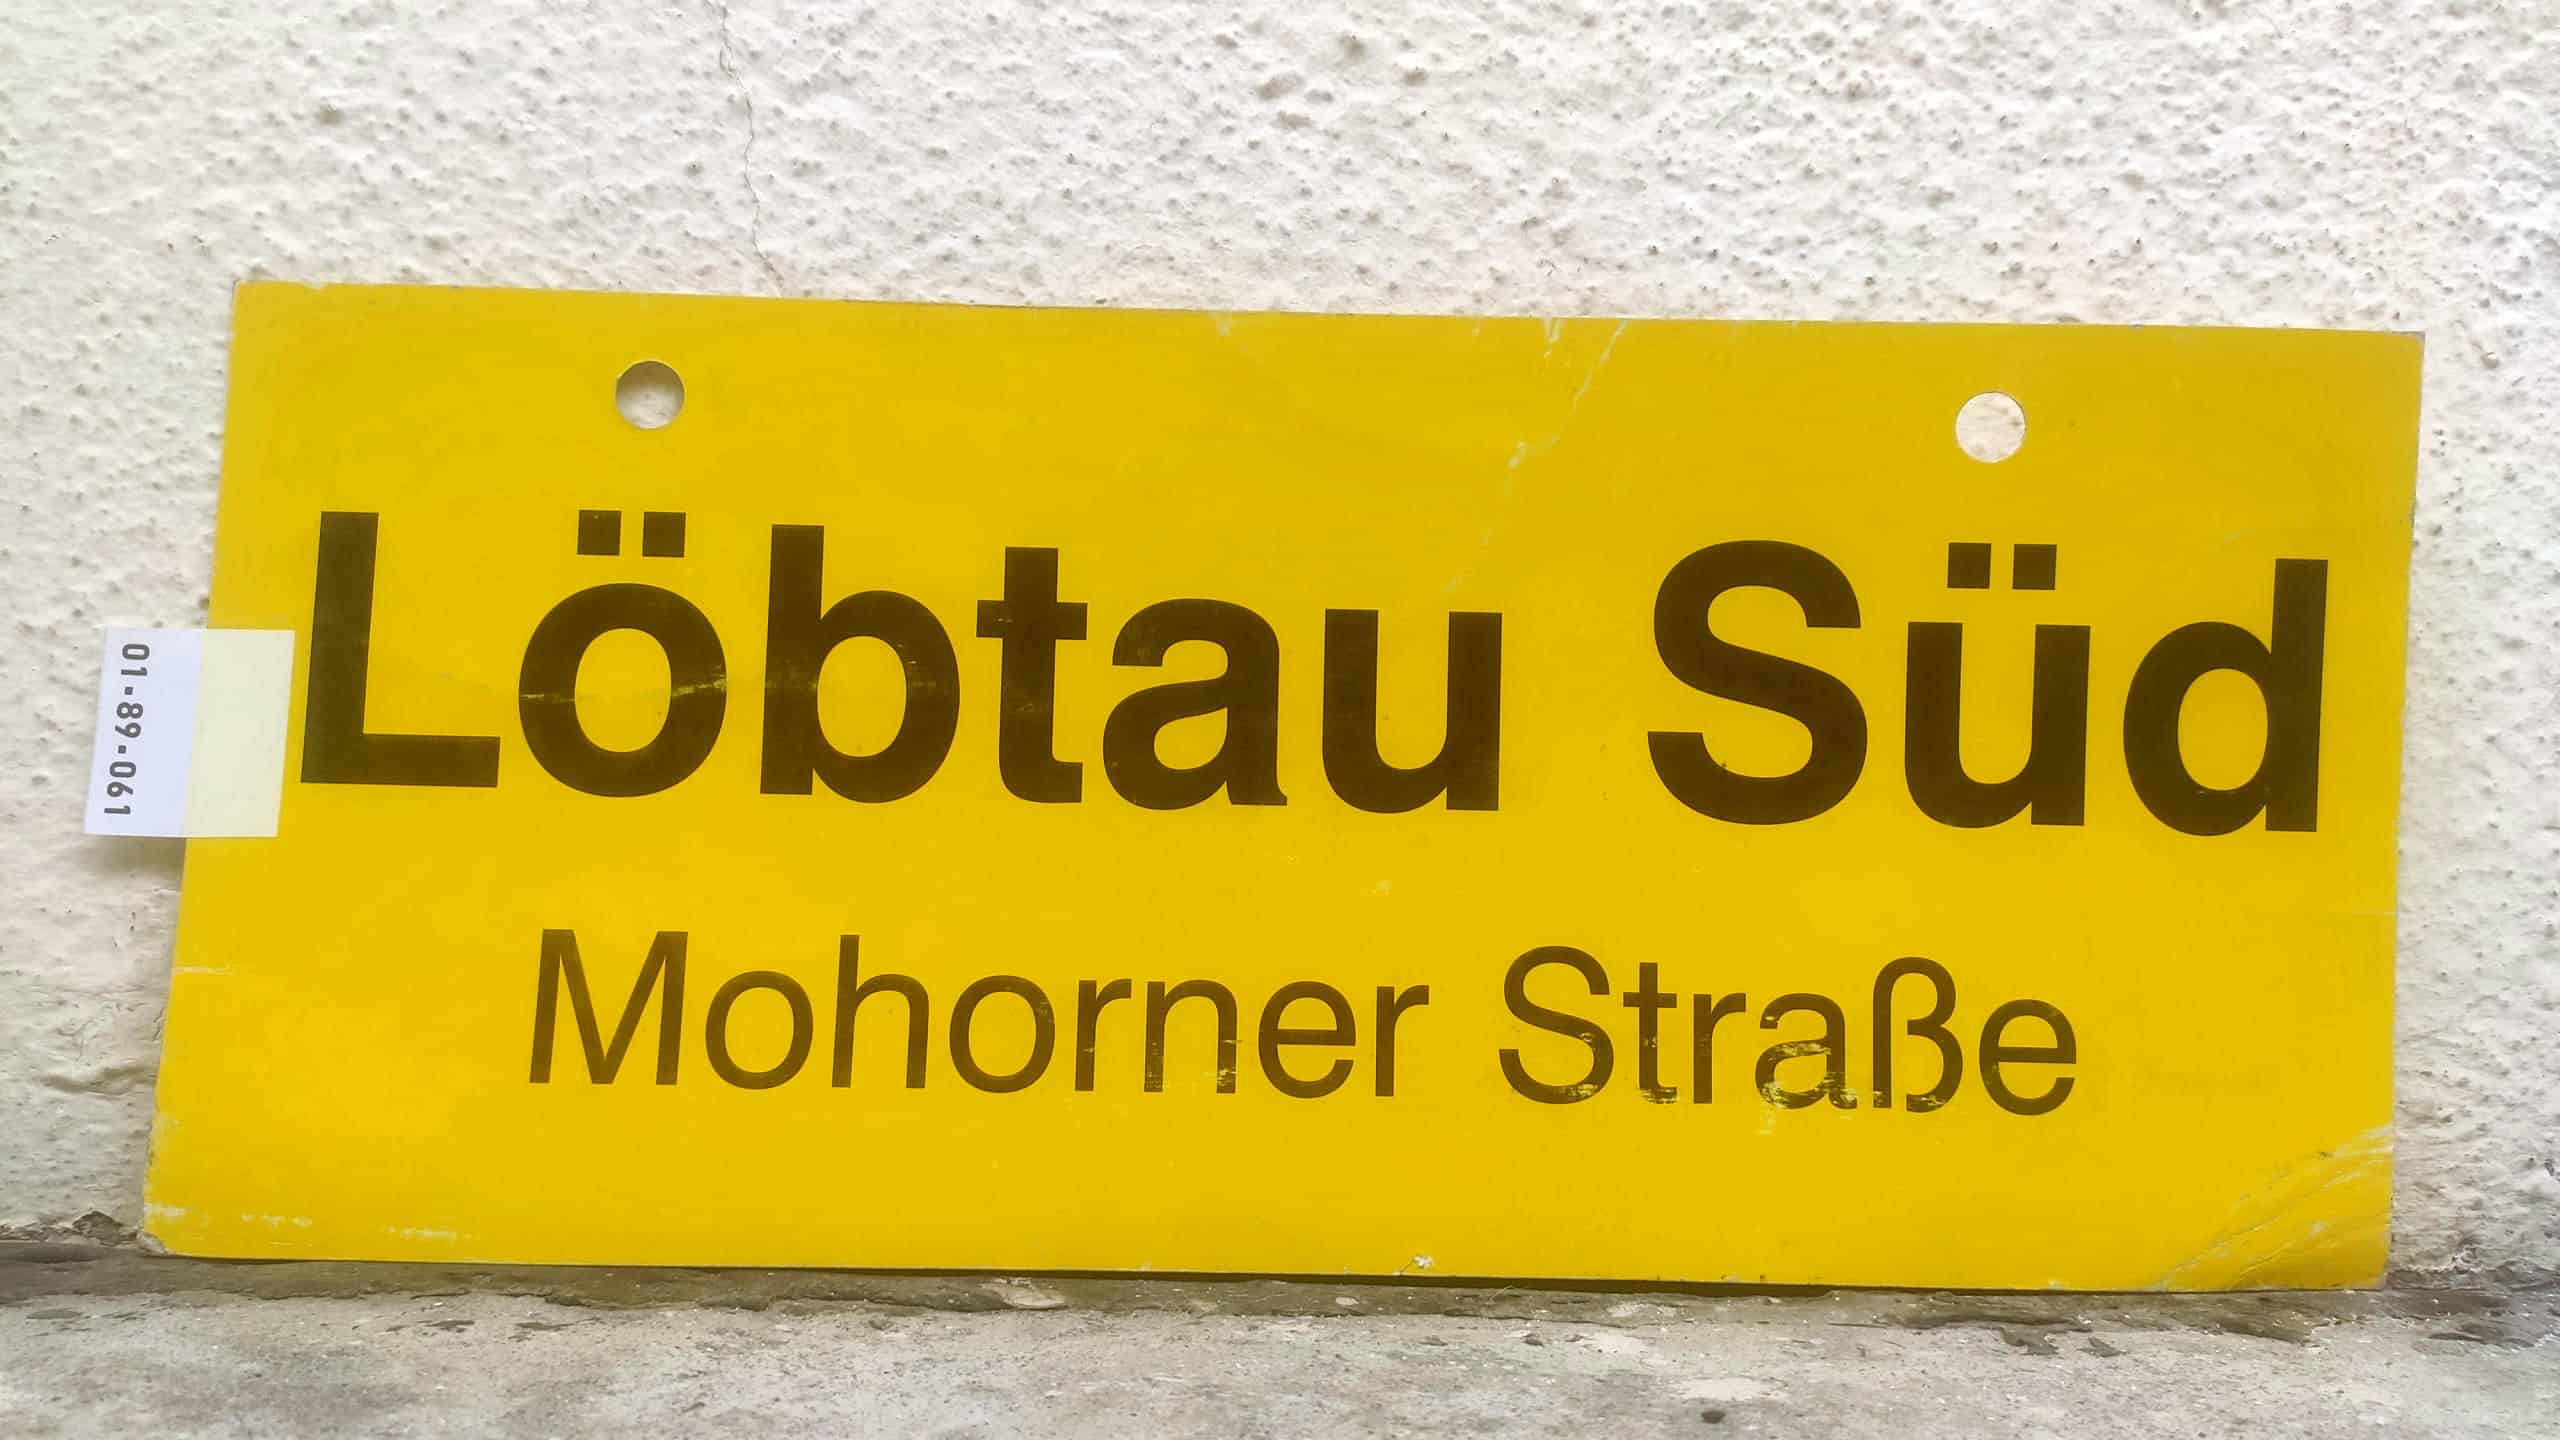 Löbtau Süd Mohorner Straße